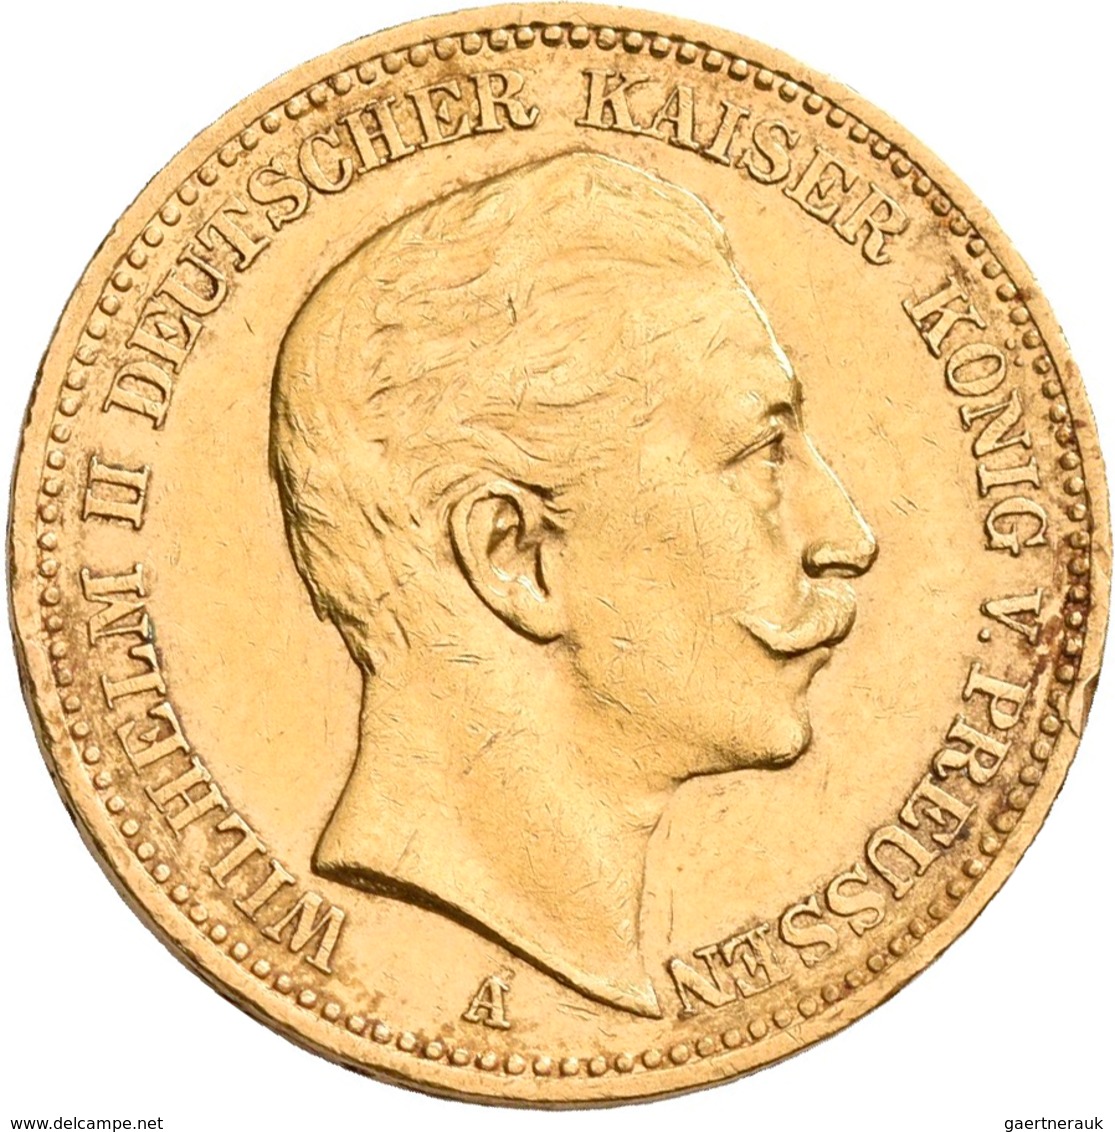 Preußen: Wilhelm II. 1888-1918: Lot 16 Goldmünzen zu 20 Mark aus den Jahren 1894 - 1911. Jaeger 252.